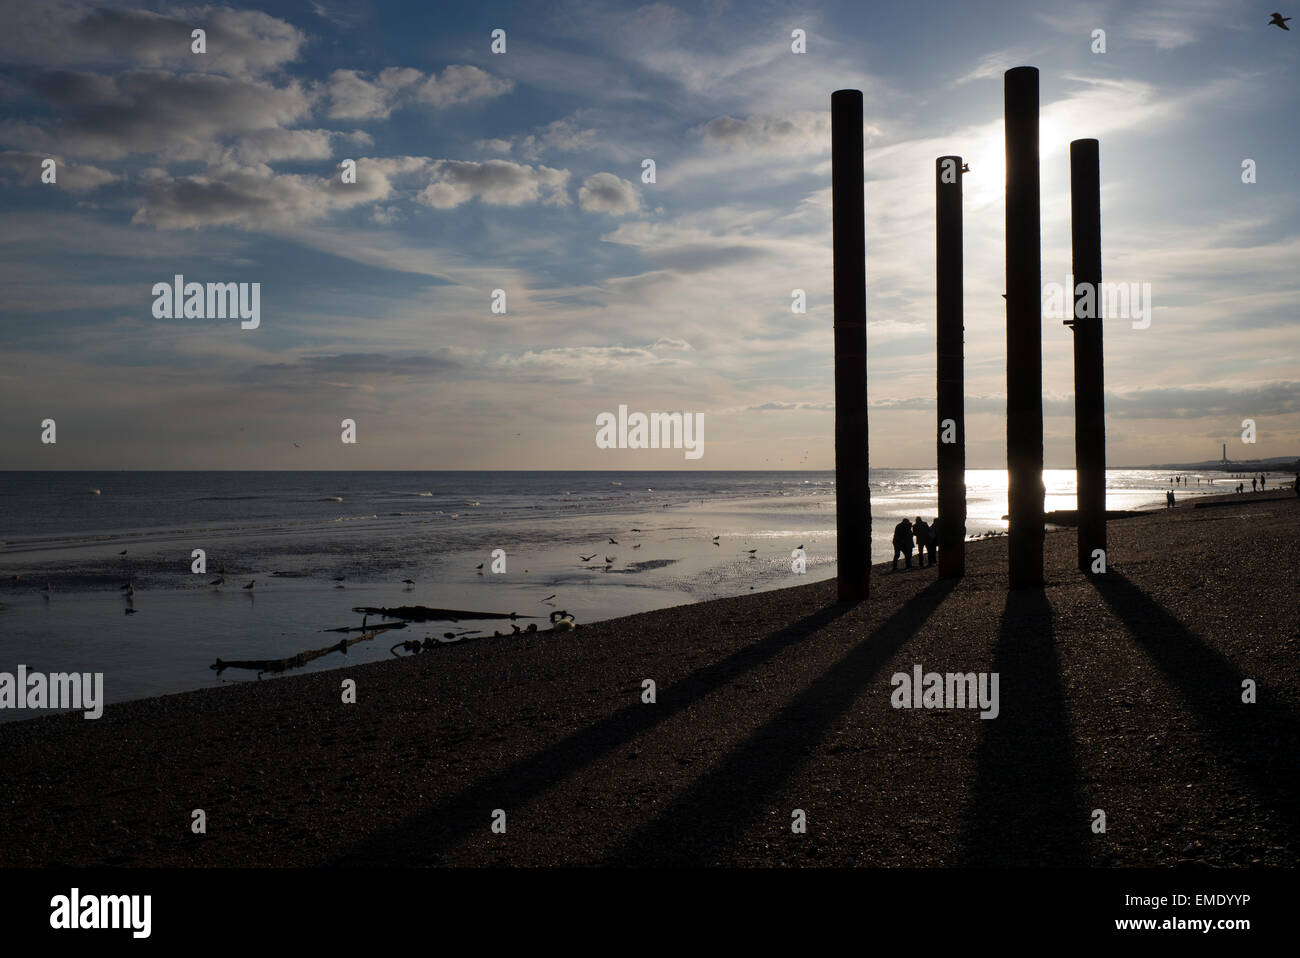 Menschen am Strand, alte Pier stützen, Sonnenuntergang, Ebbe, Strand von Brighton, UK Stockfoto